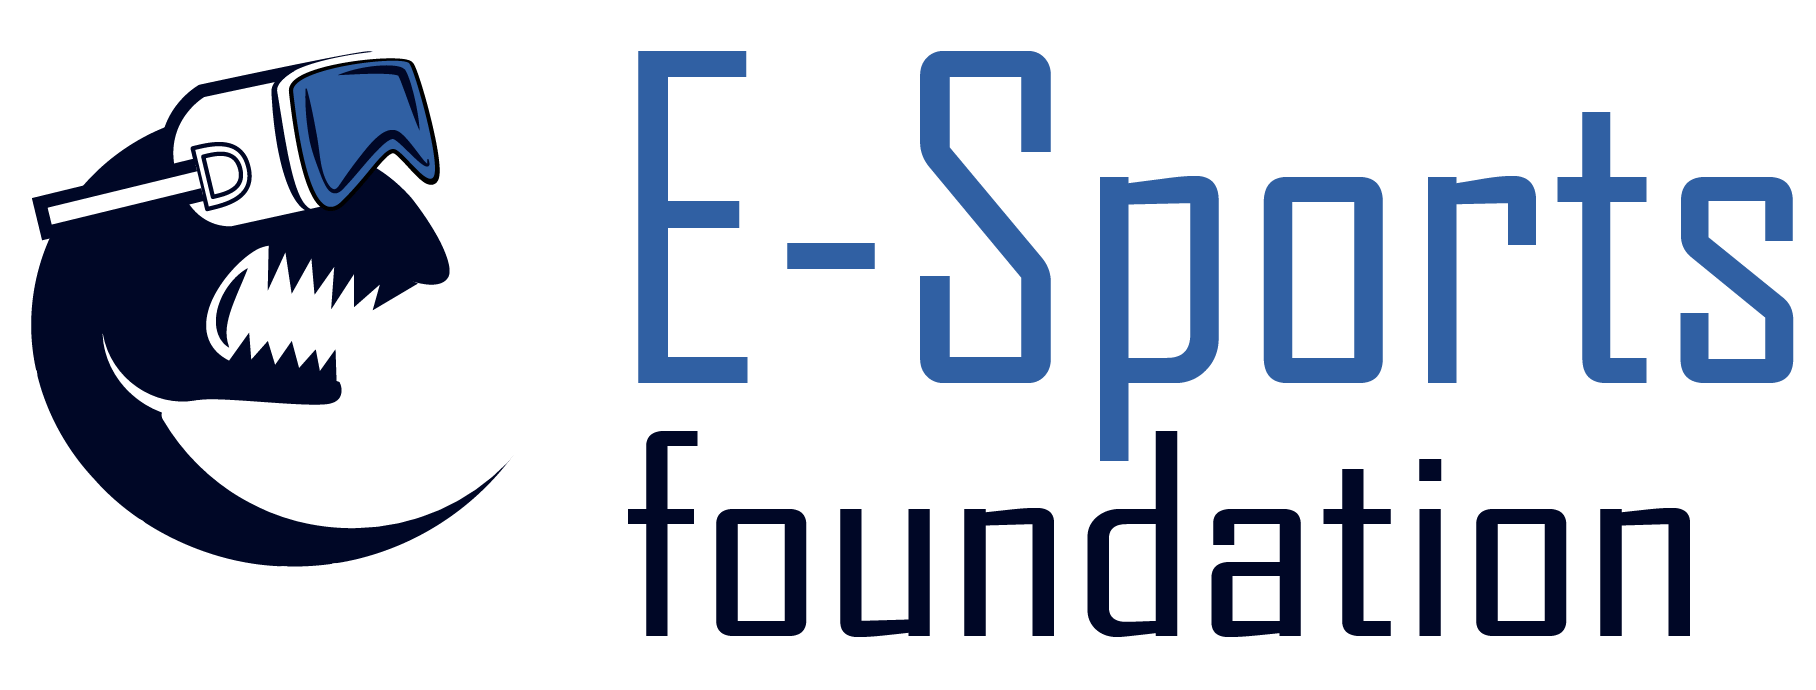 E-Sports Foundation Non-Profit Organization